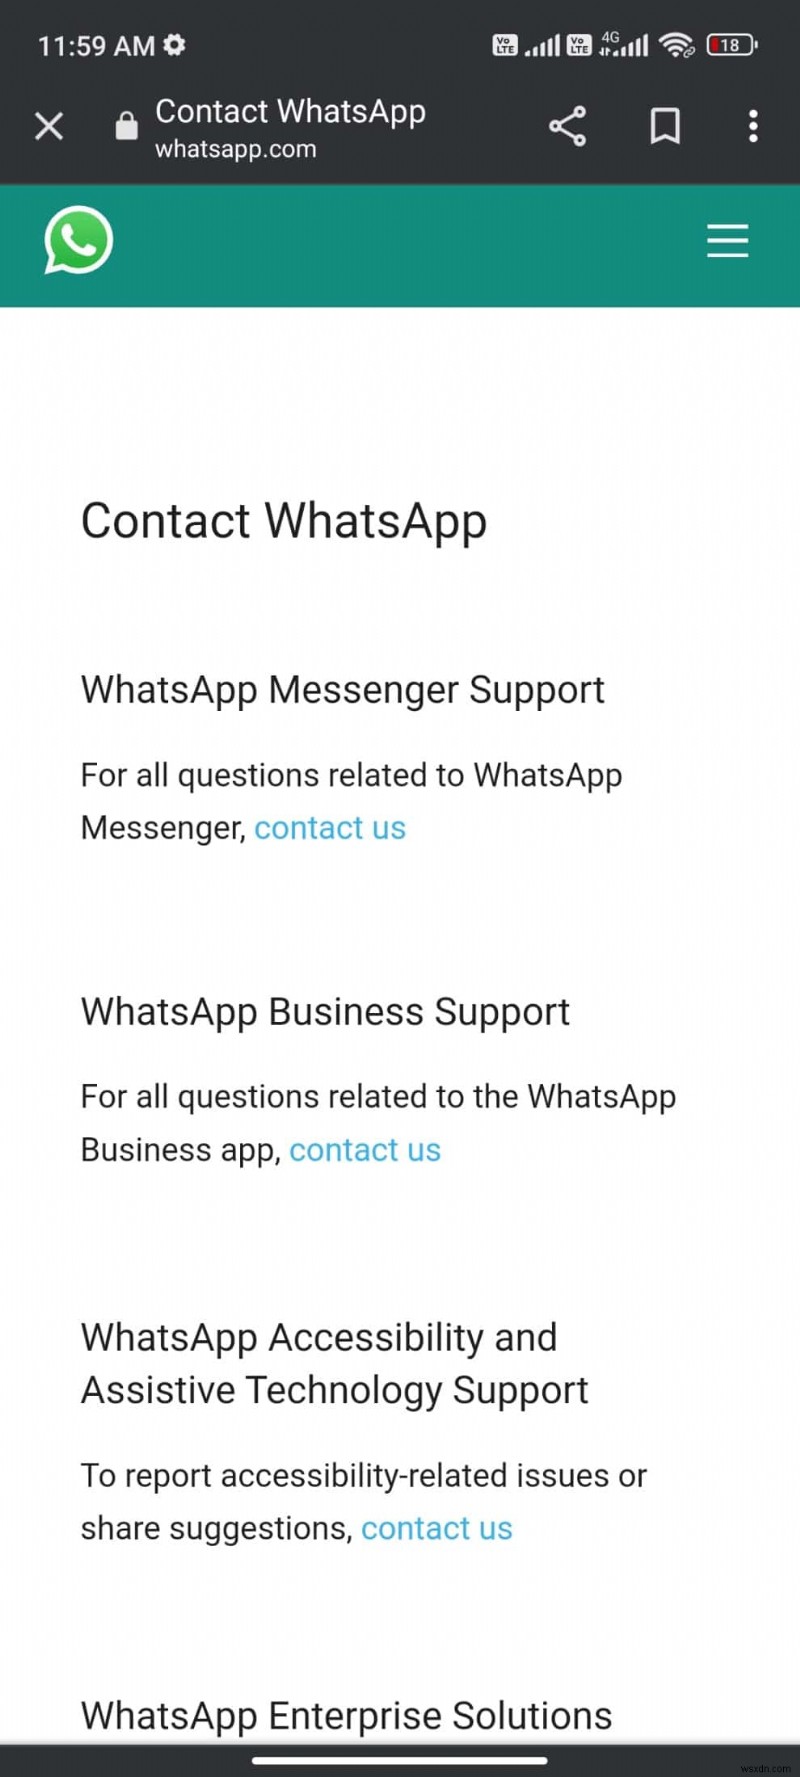 แก้ไข WhatsApp ทำให้หยุดทำงานบน Android